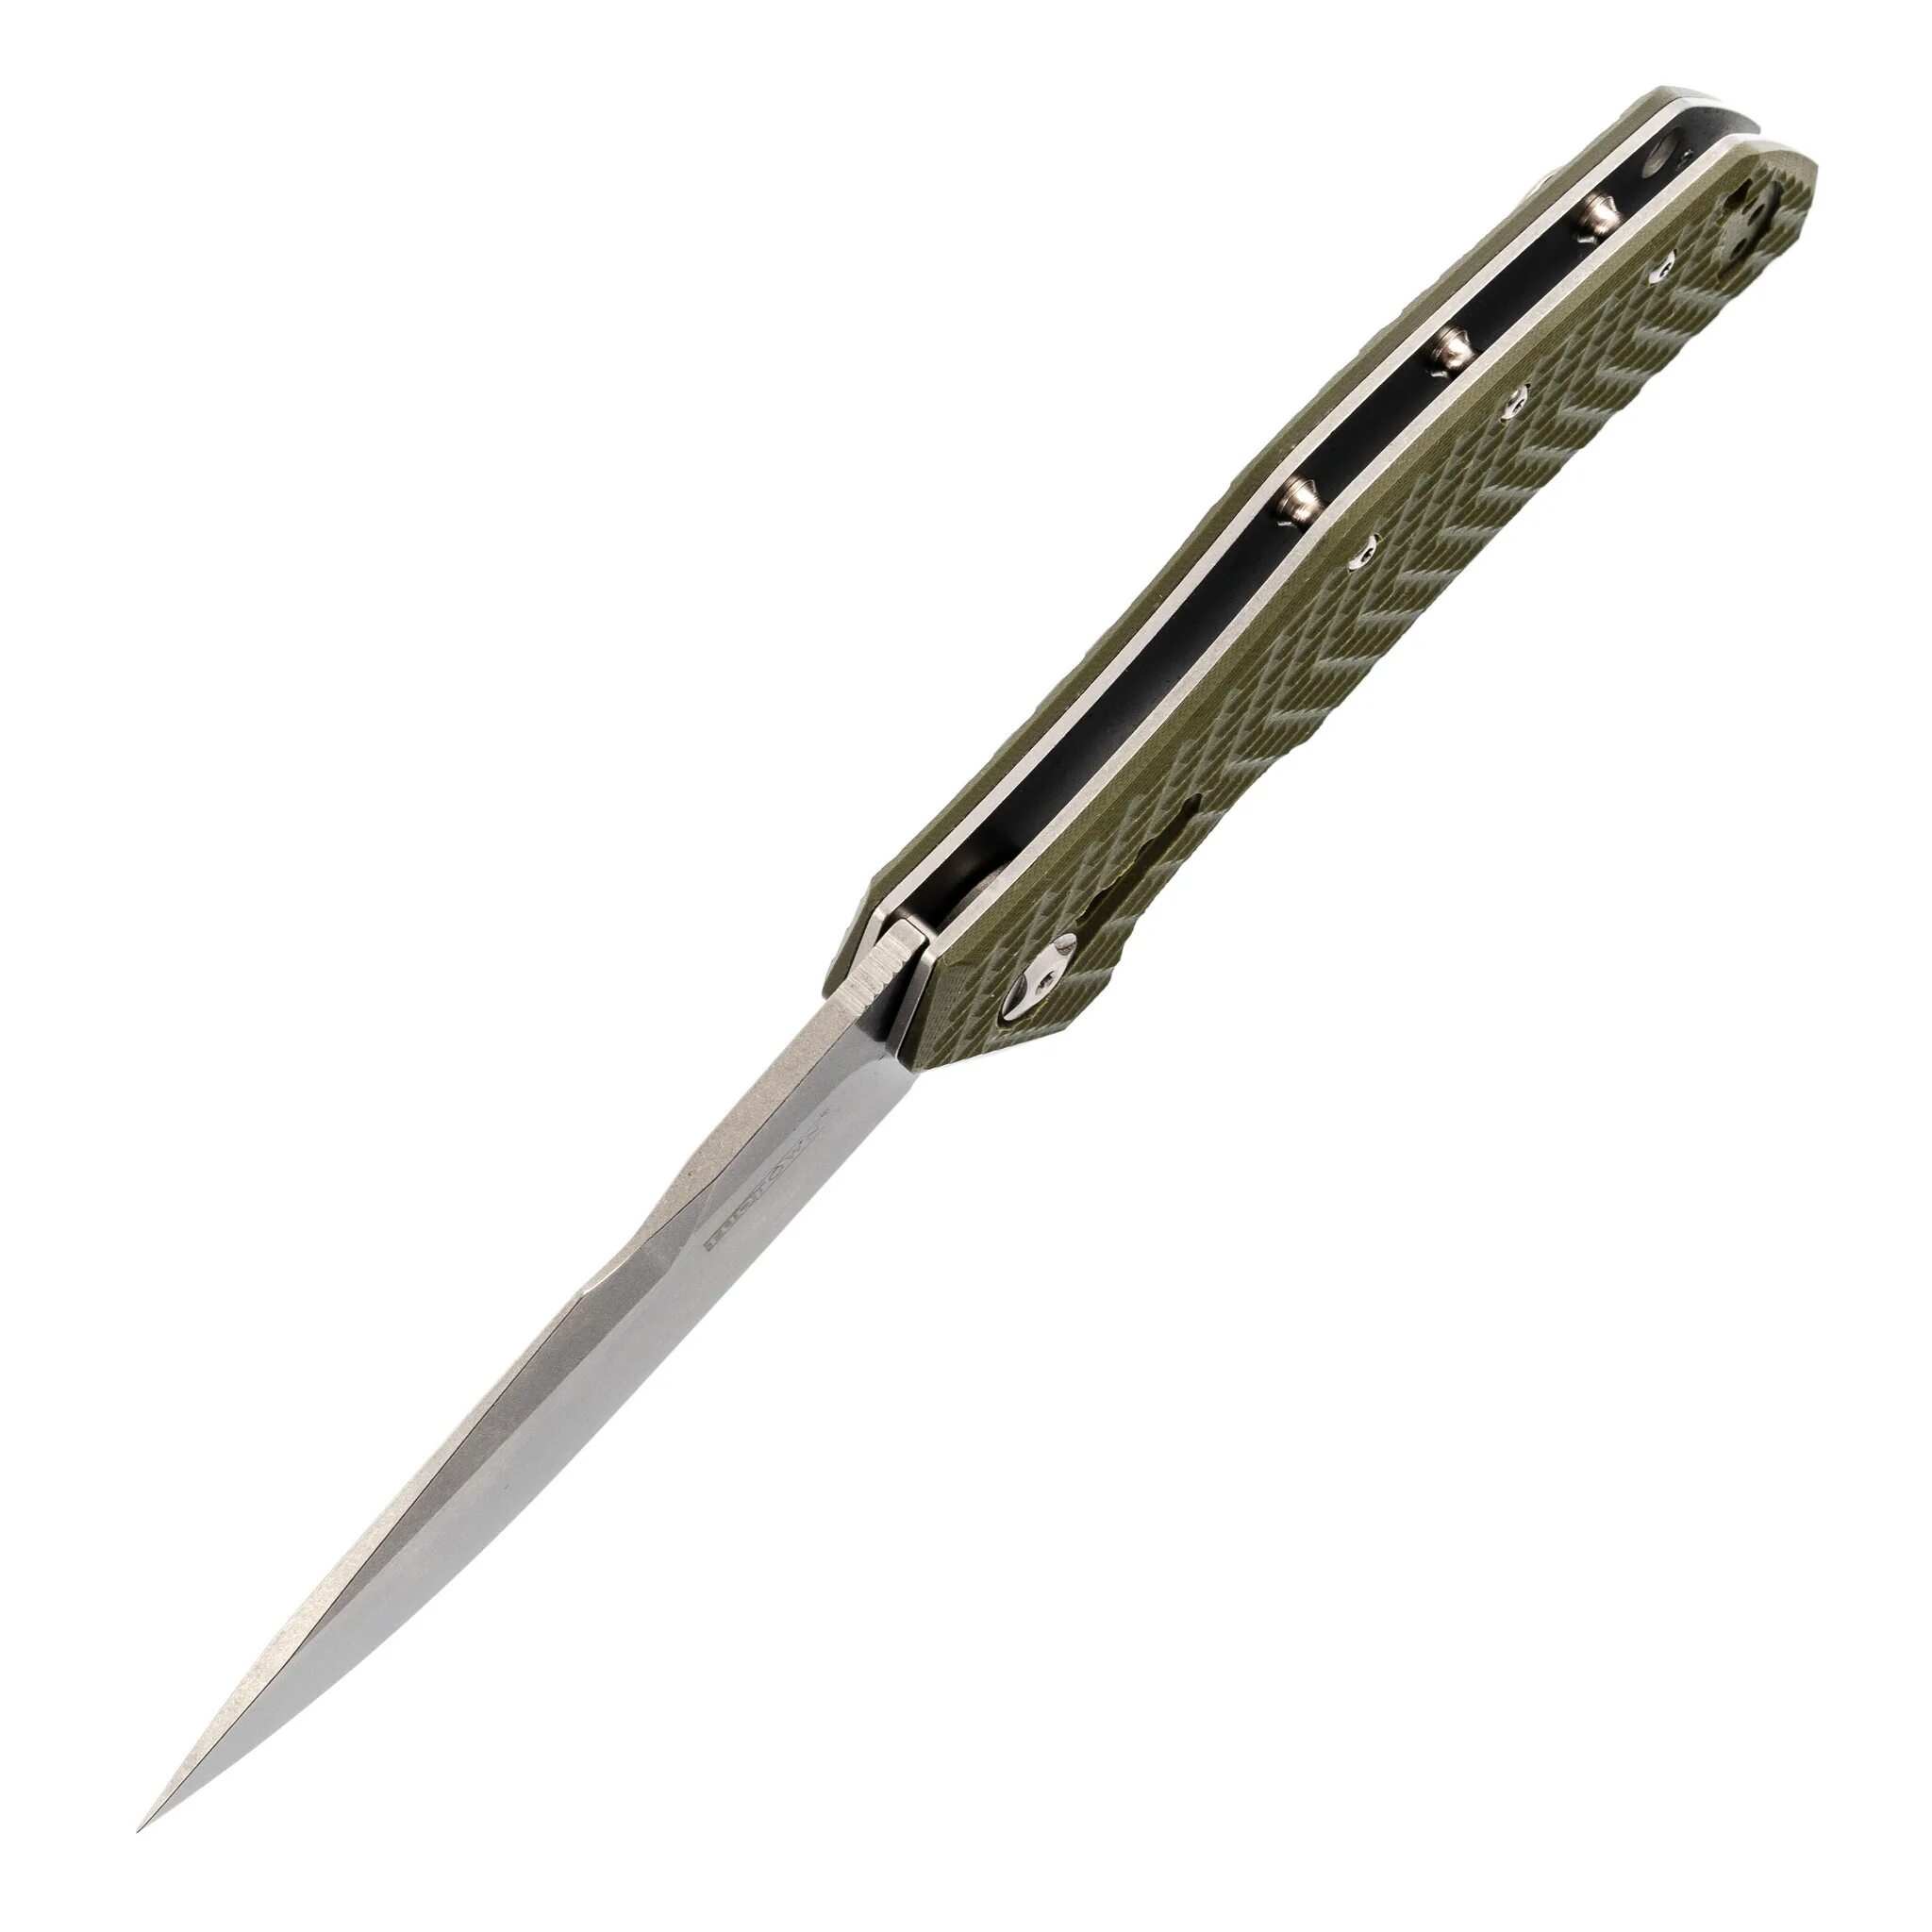 Ножи tuotown купить. Нож TUOTOWN d2 складной. Нож TUOTOWN jj066-tuo-g. Нож TUOTOWN d2 складной карбон. "TUOTOWN" m390.